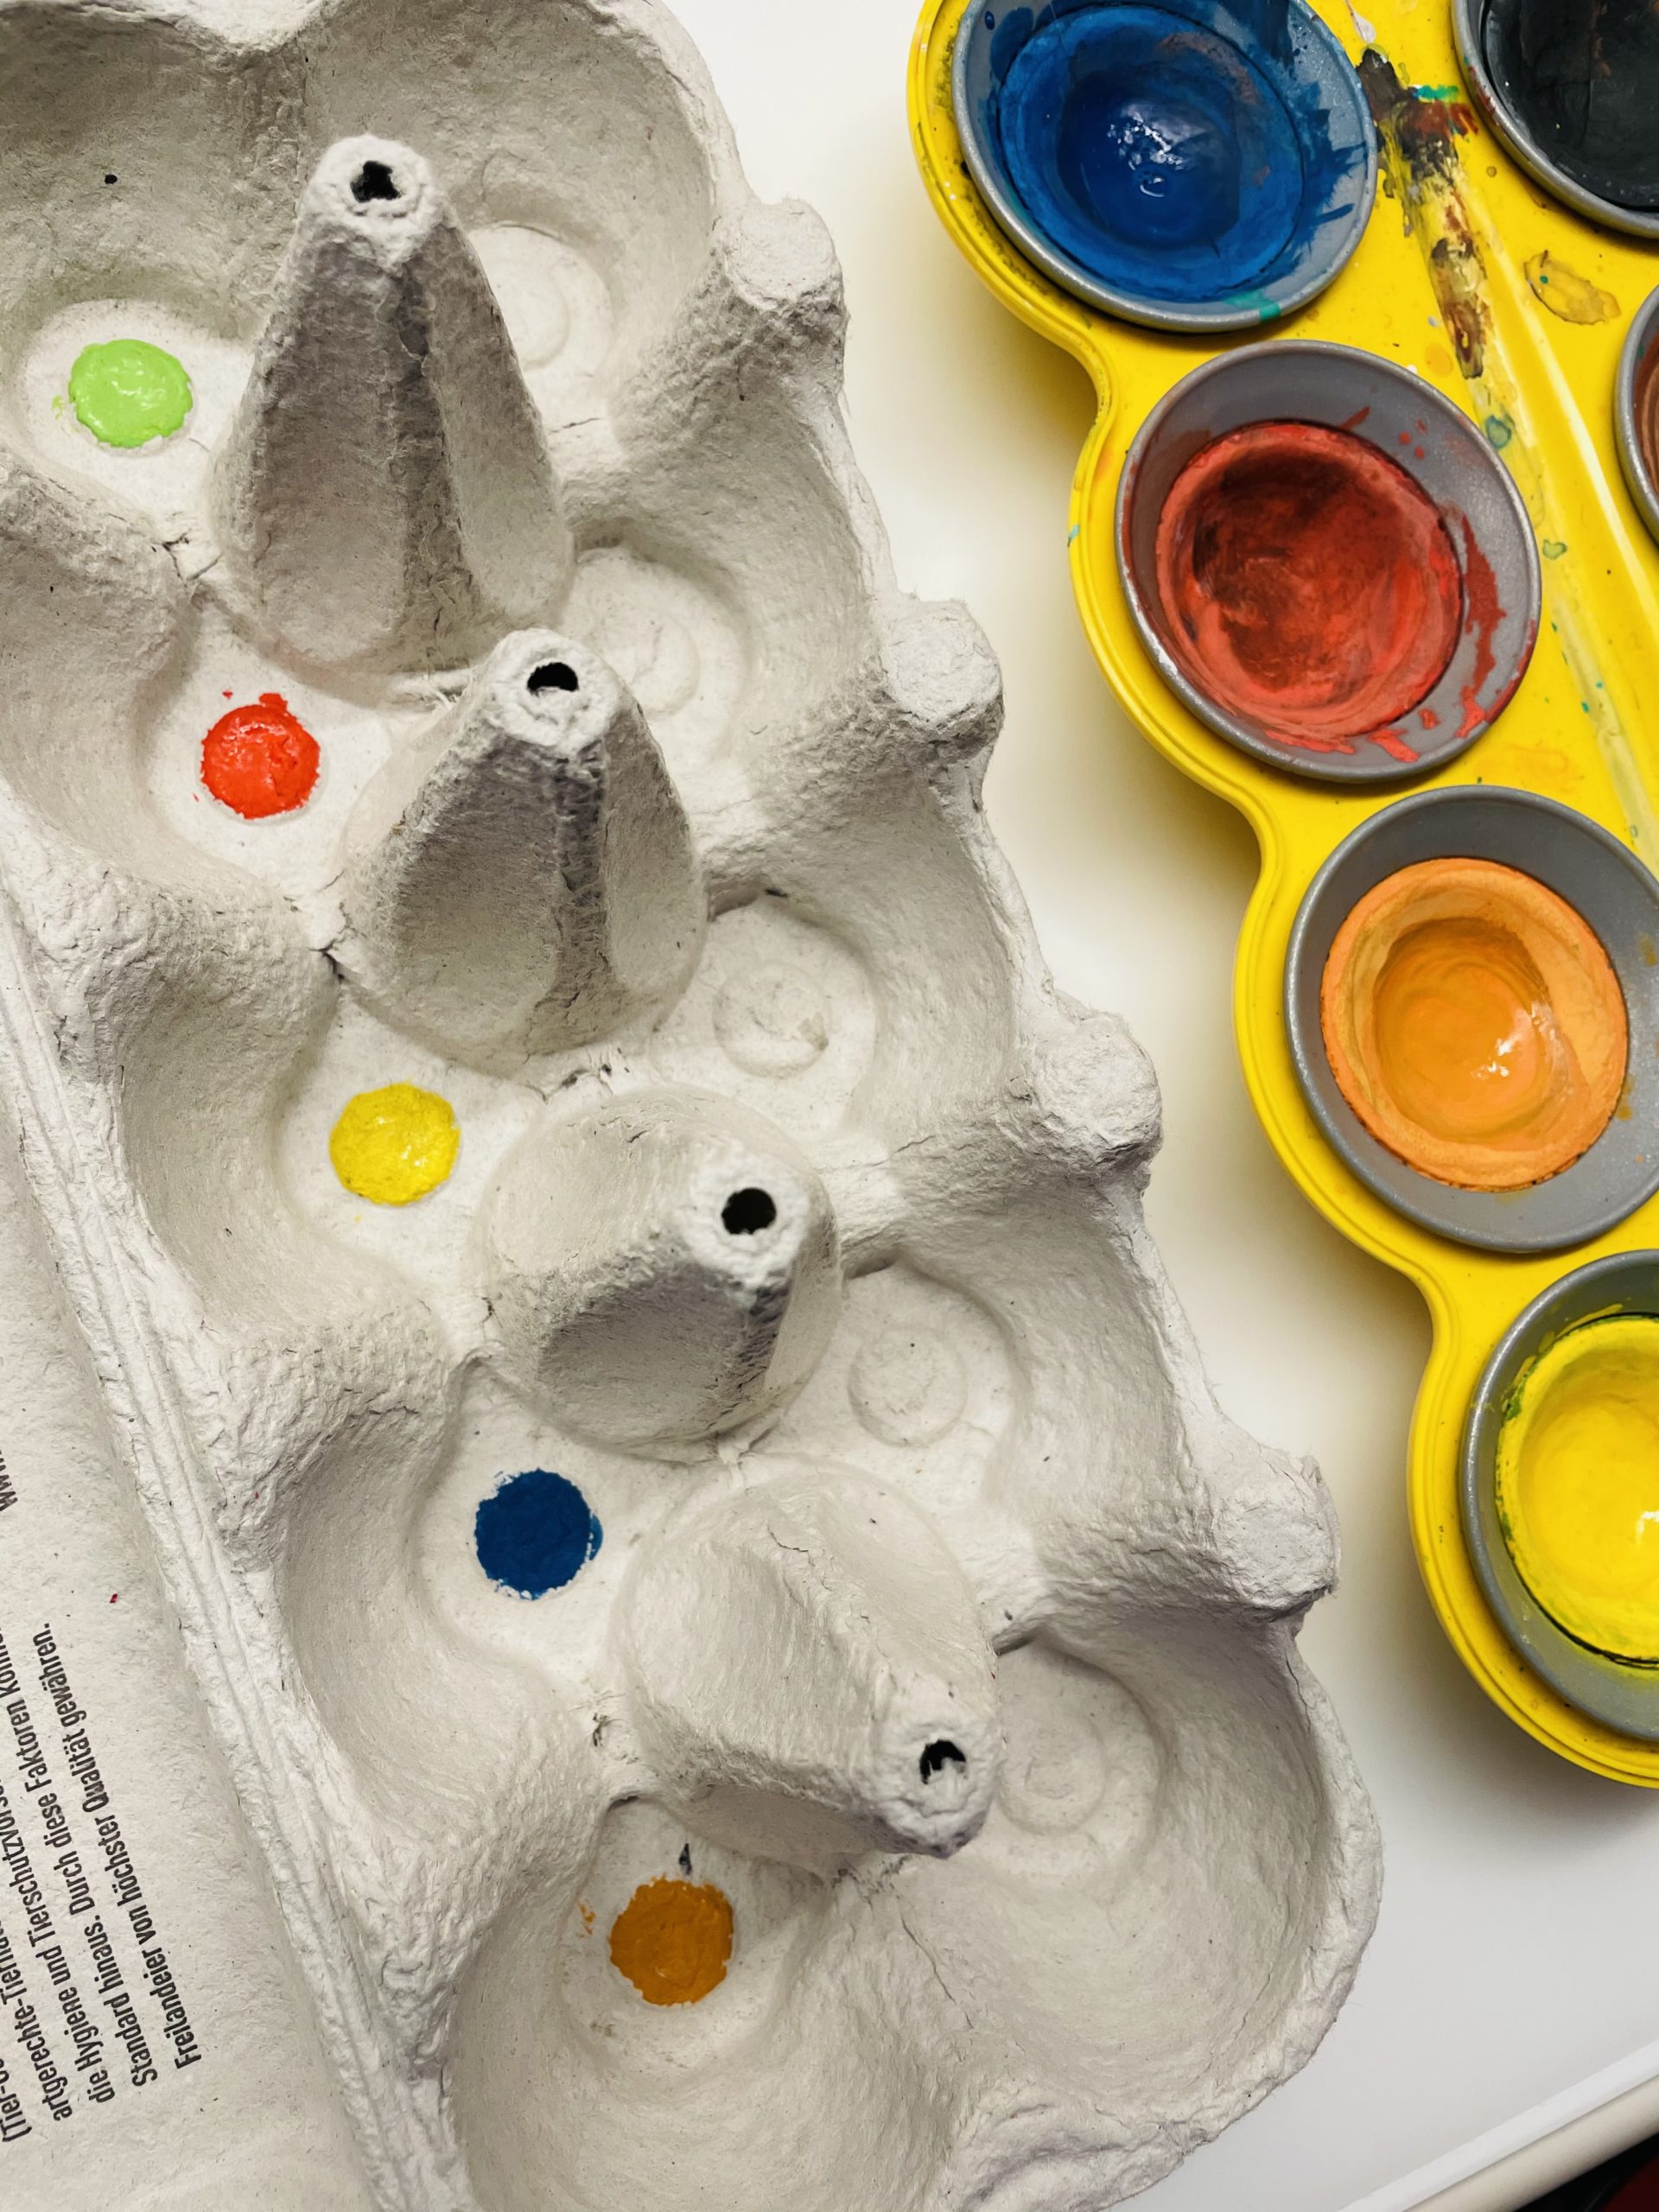 Bild zum Schritt 28 für die Kinder-Beschäftigung: 'Malt die Farben auf, das lenkt die Kinder weniger vom...'